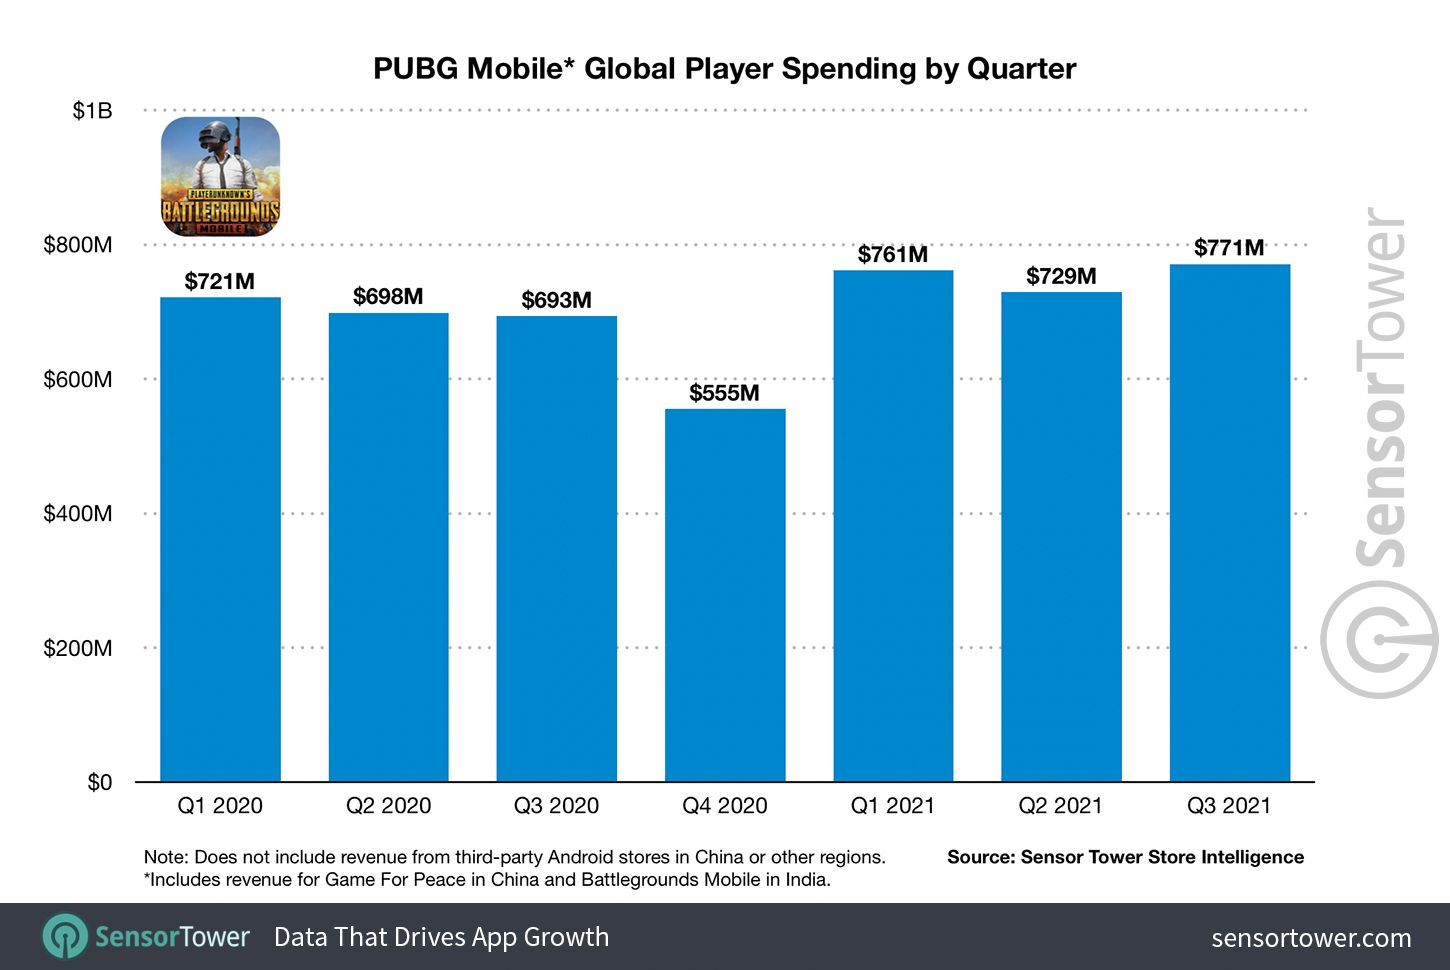 Data pendapatan PUBG Mobile tahun 2021